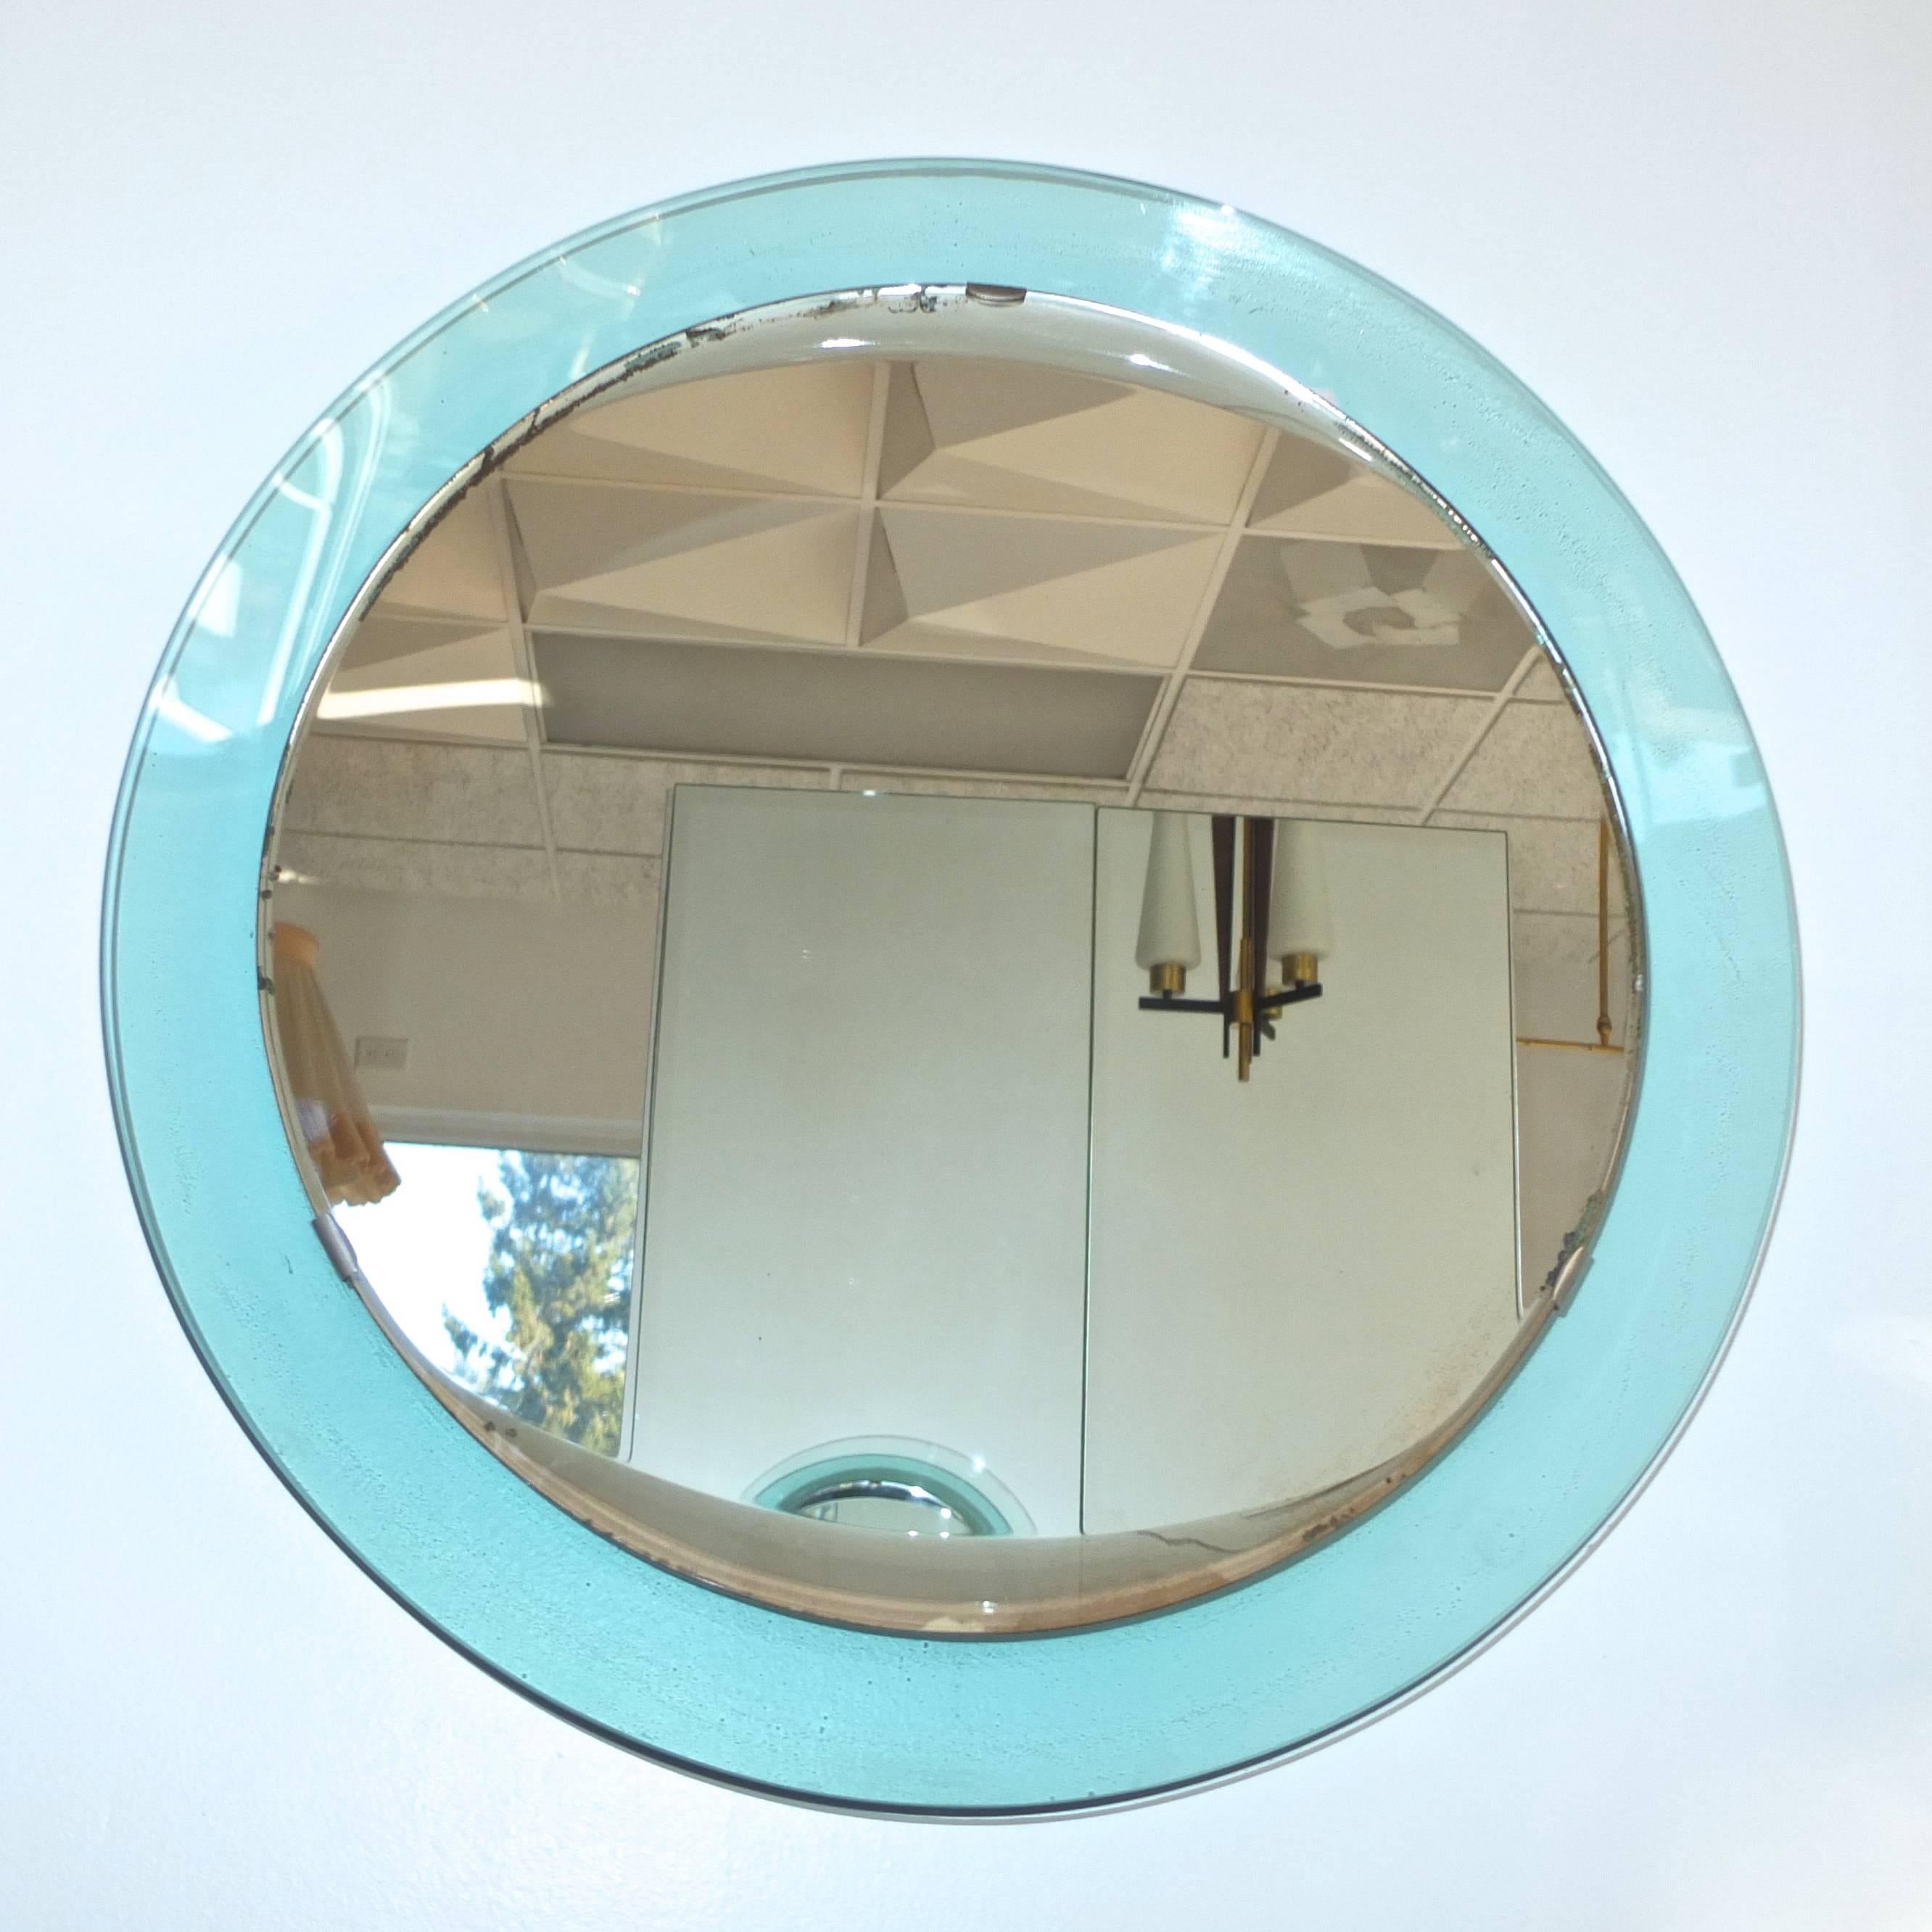 Miroir concave peu profond vert pâle de Fontana Arte, conçu par Pietro Chiesa.

Bol vert de 23 pouces de diamètre, verre miroir de 19 pouces de diamètre avec un biseau de style 